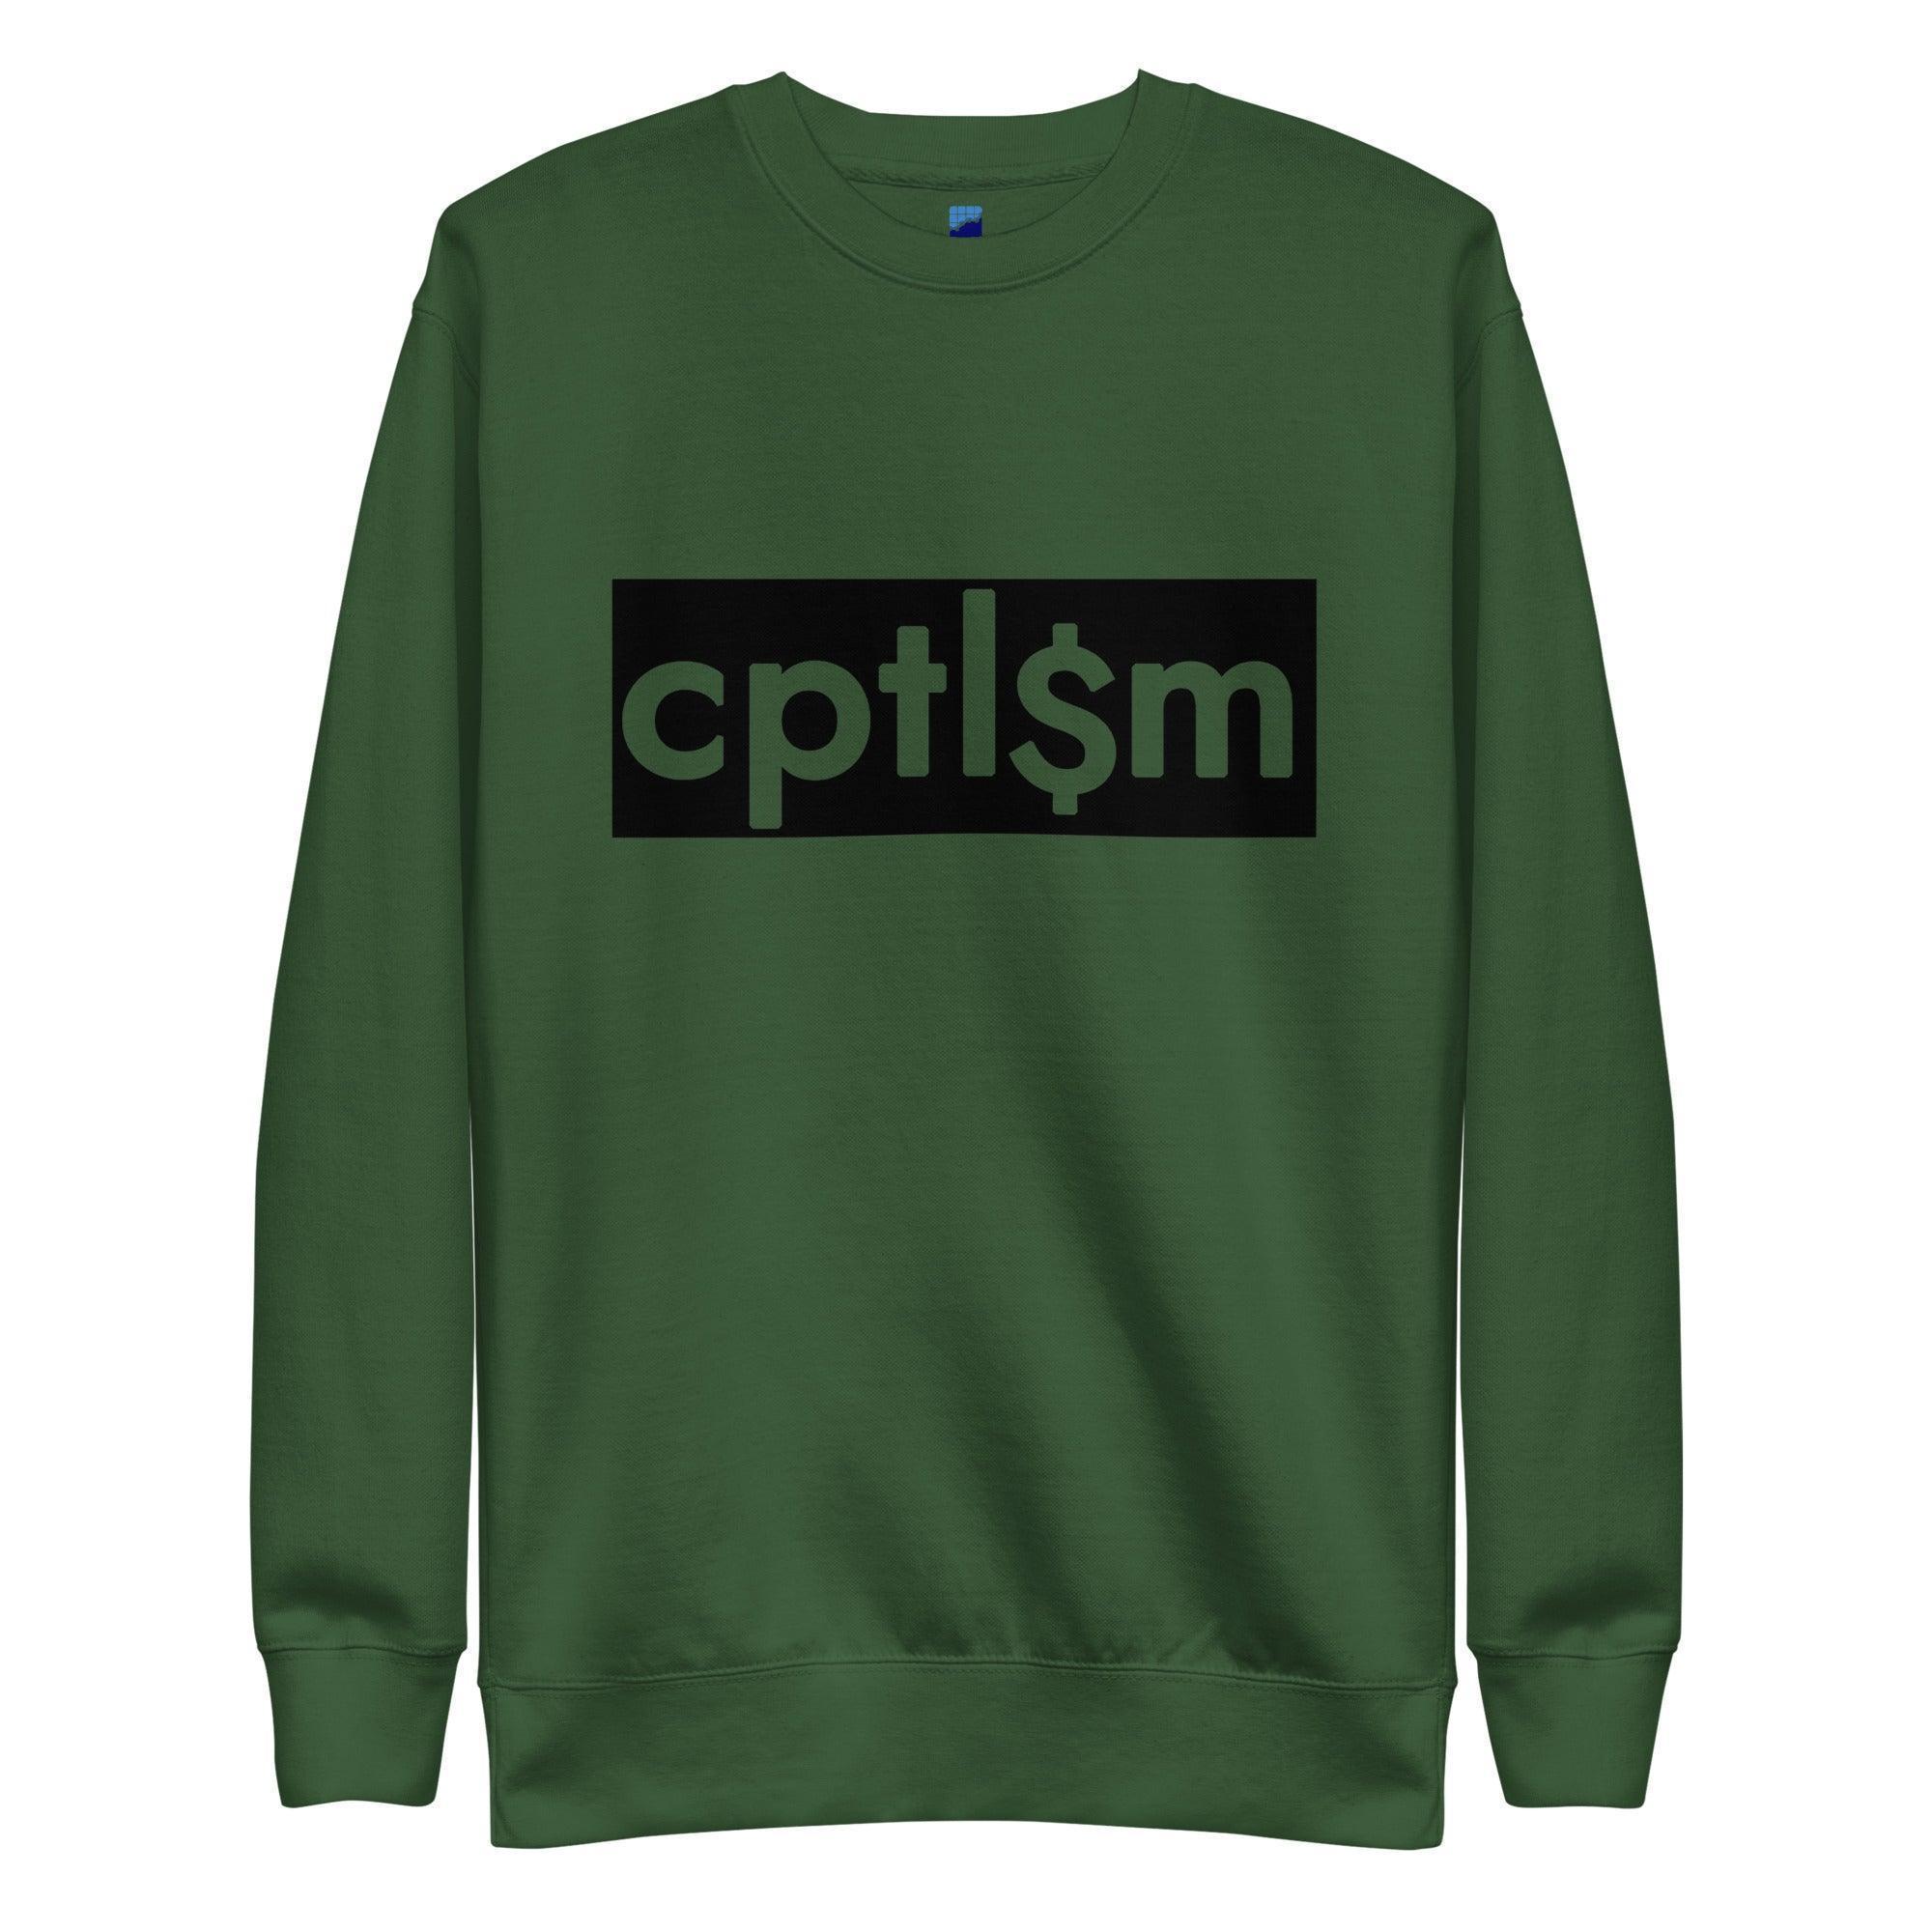 Cptl$m Sweatshirt - InvestmenTees